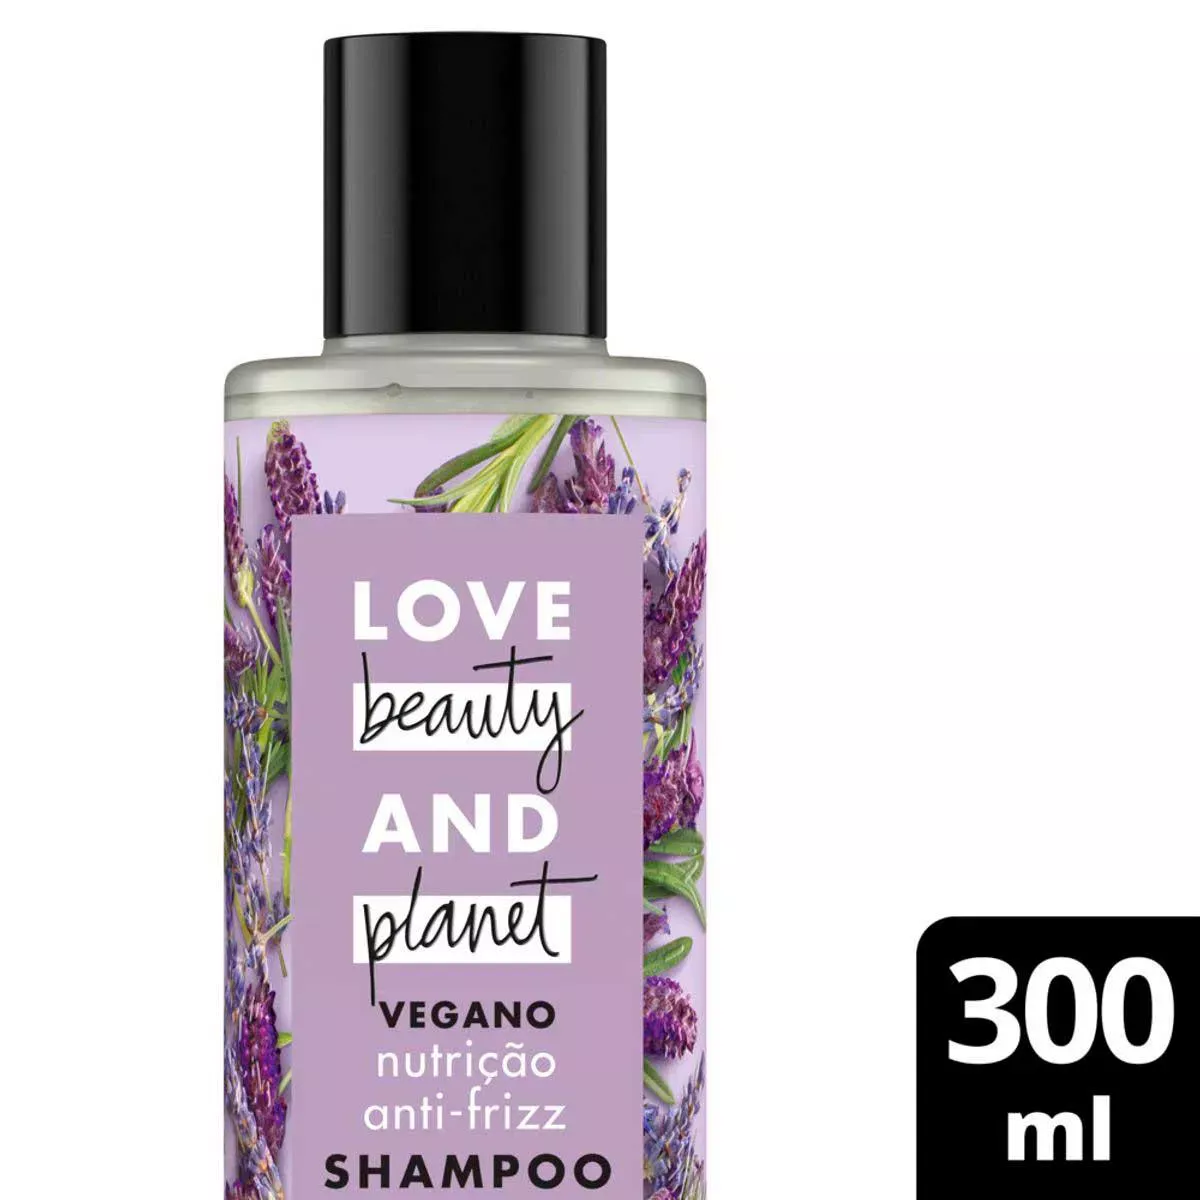 Shampoo Love Beauty And Planet Smooth And Serene leo De Argan E Lavanda Com 300ml